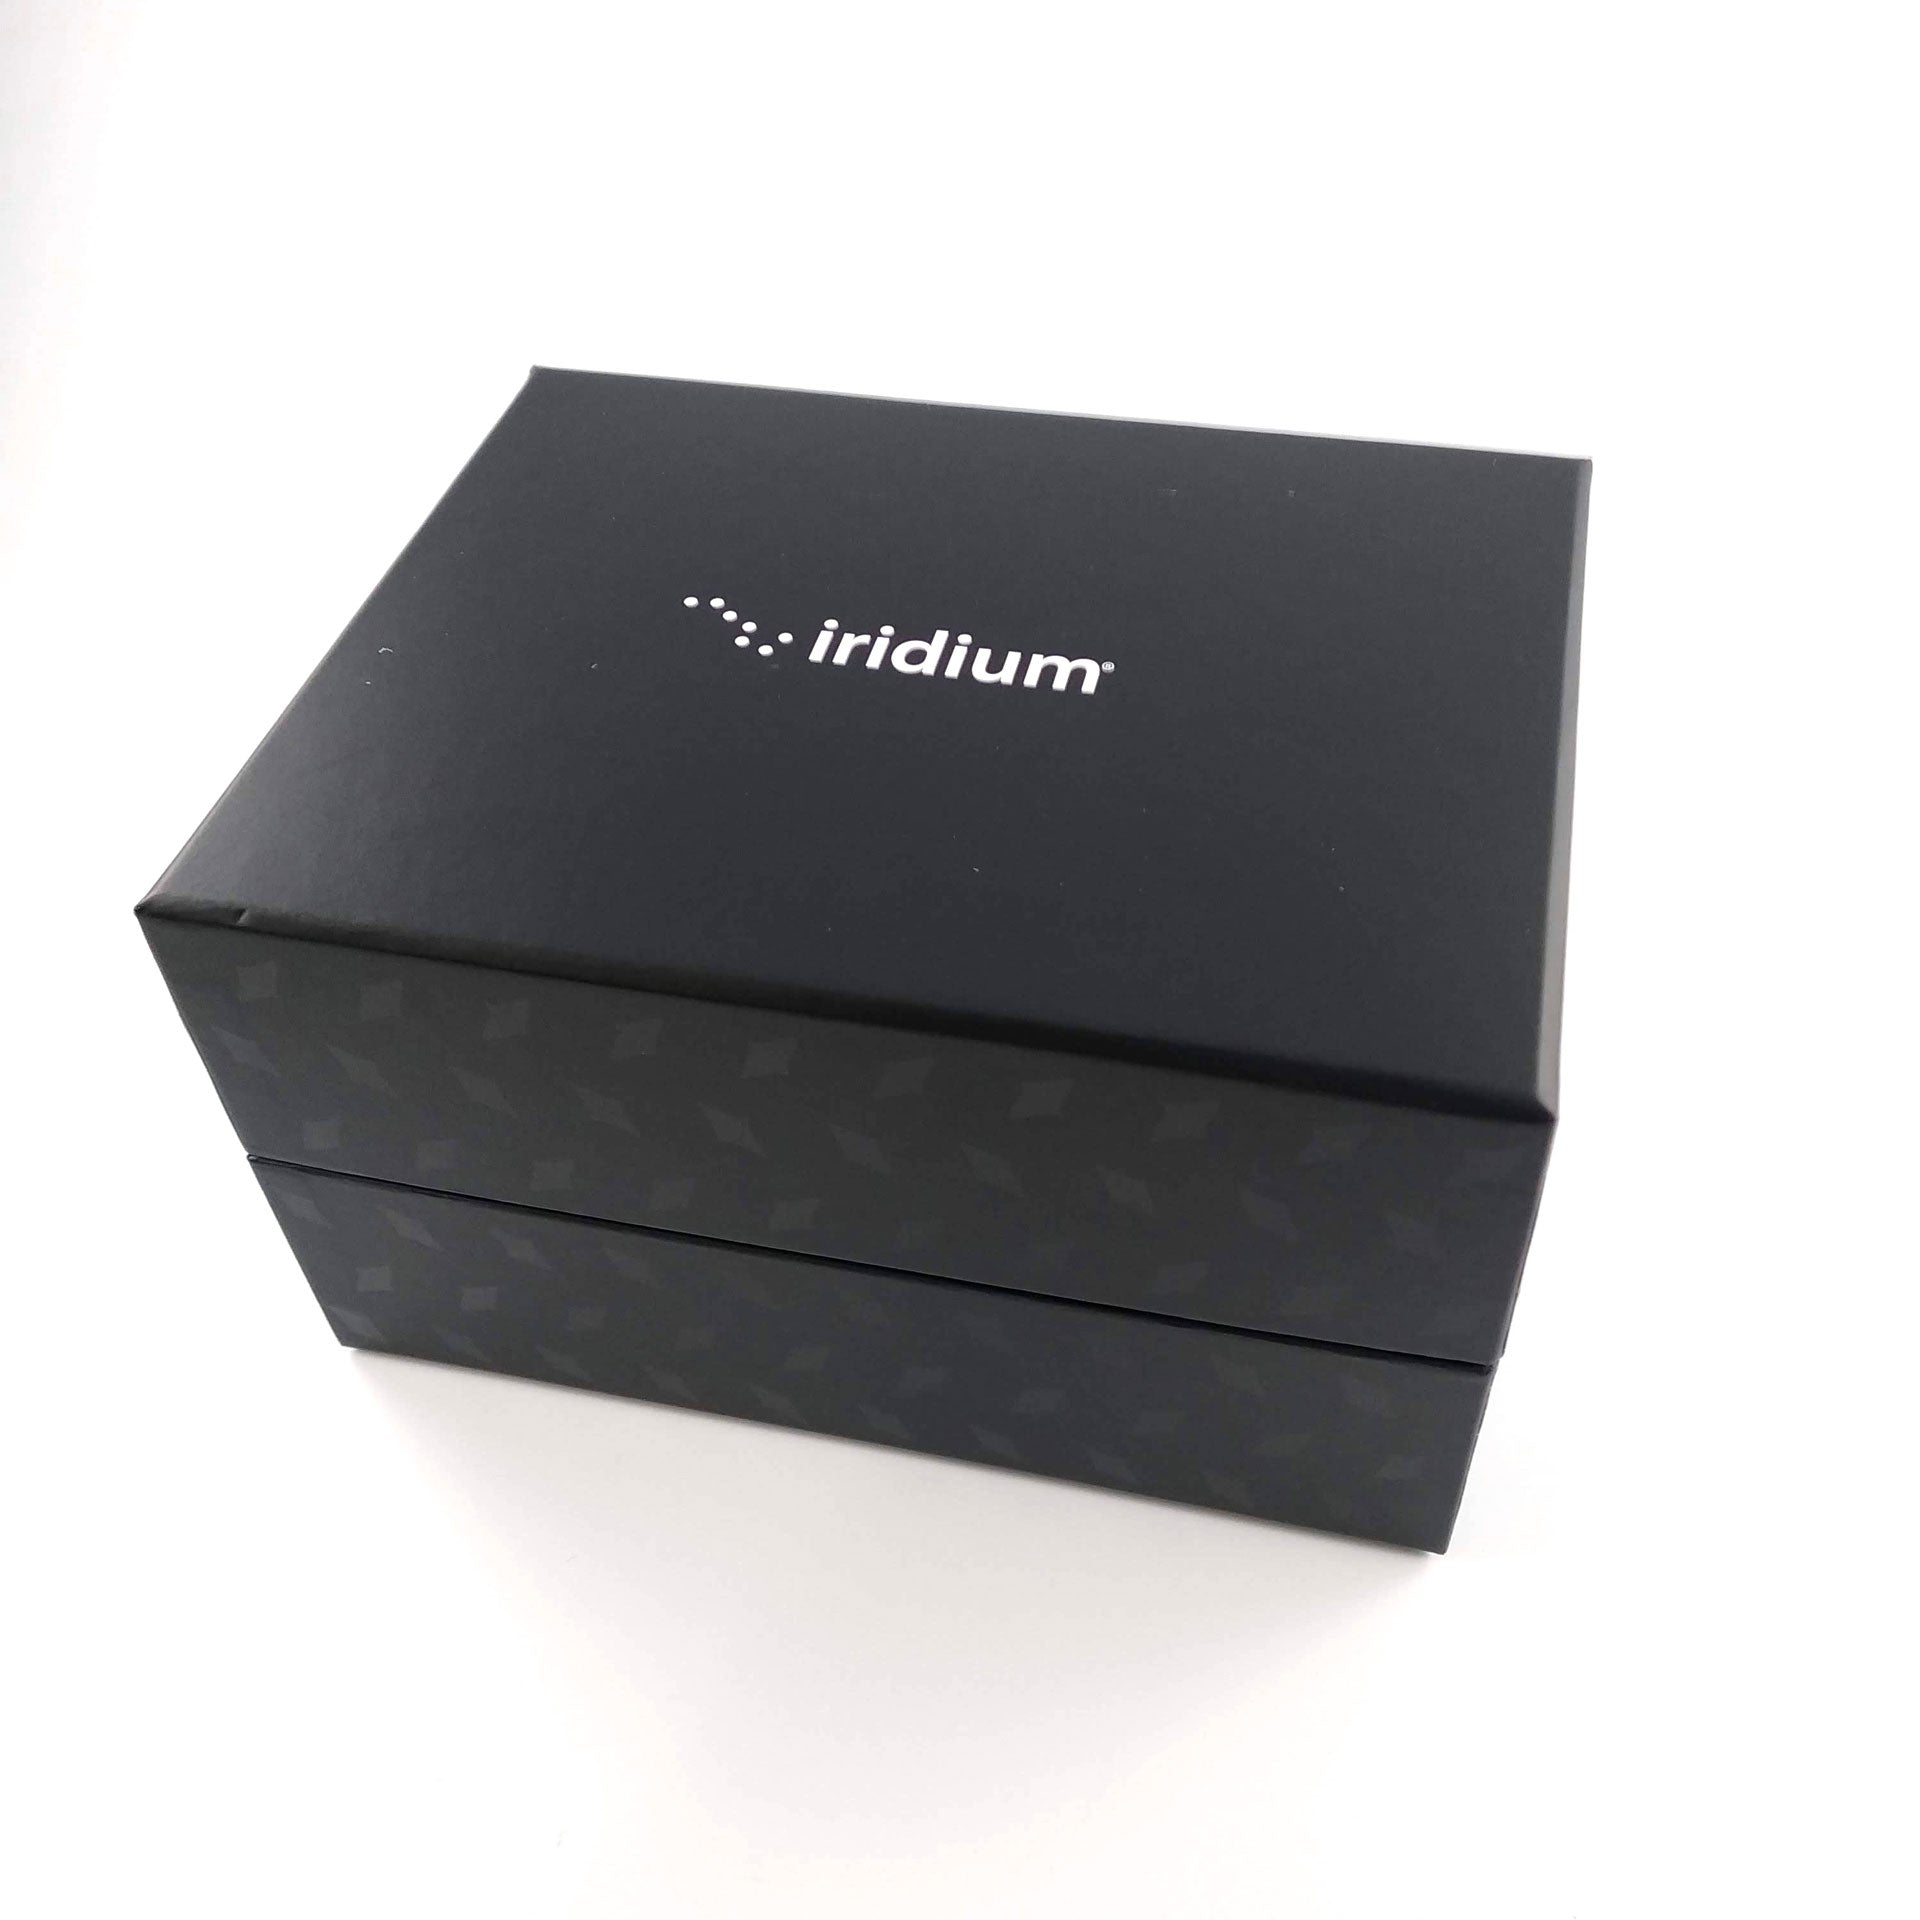 ¡Iridium Go! Box